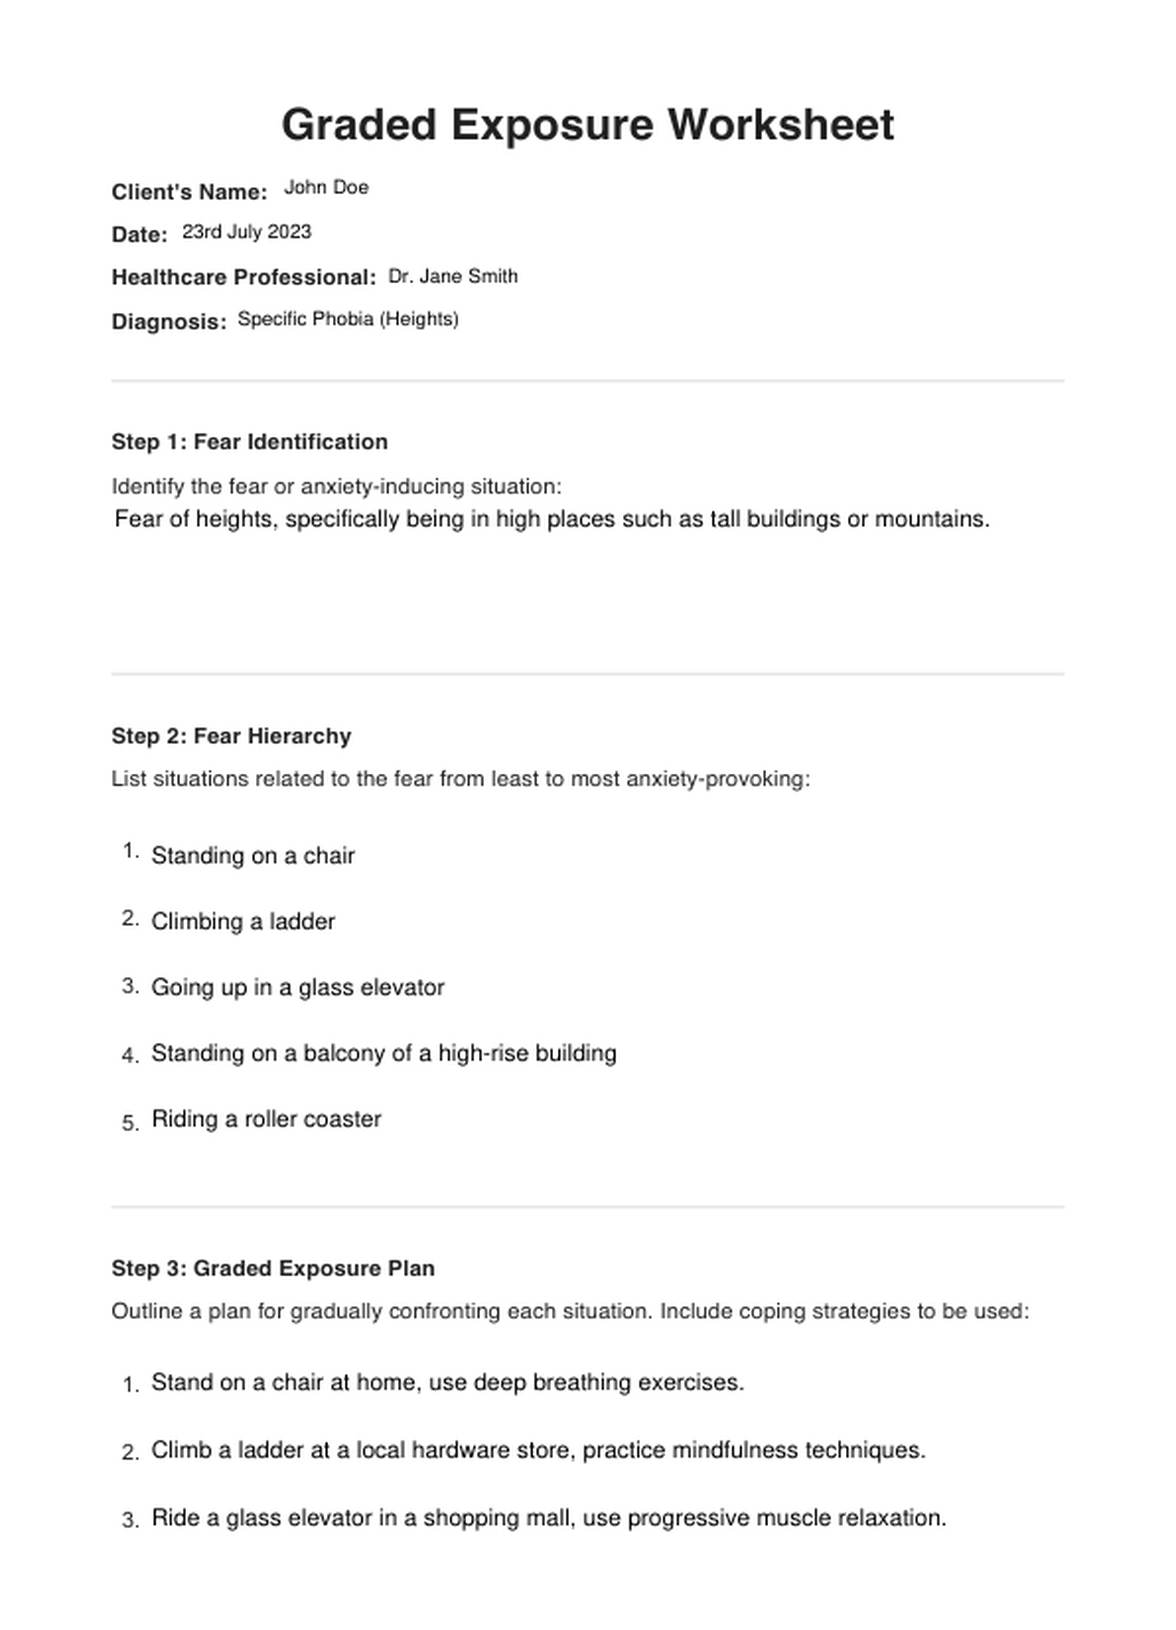 Graded Exposure Worksheet PDF Example